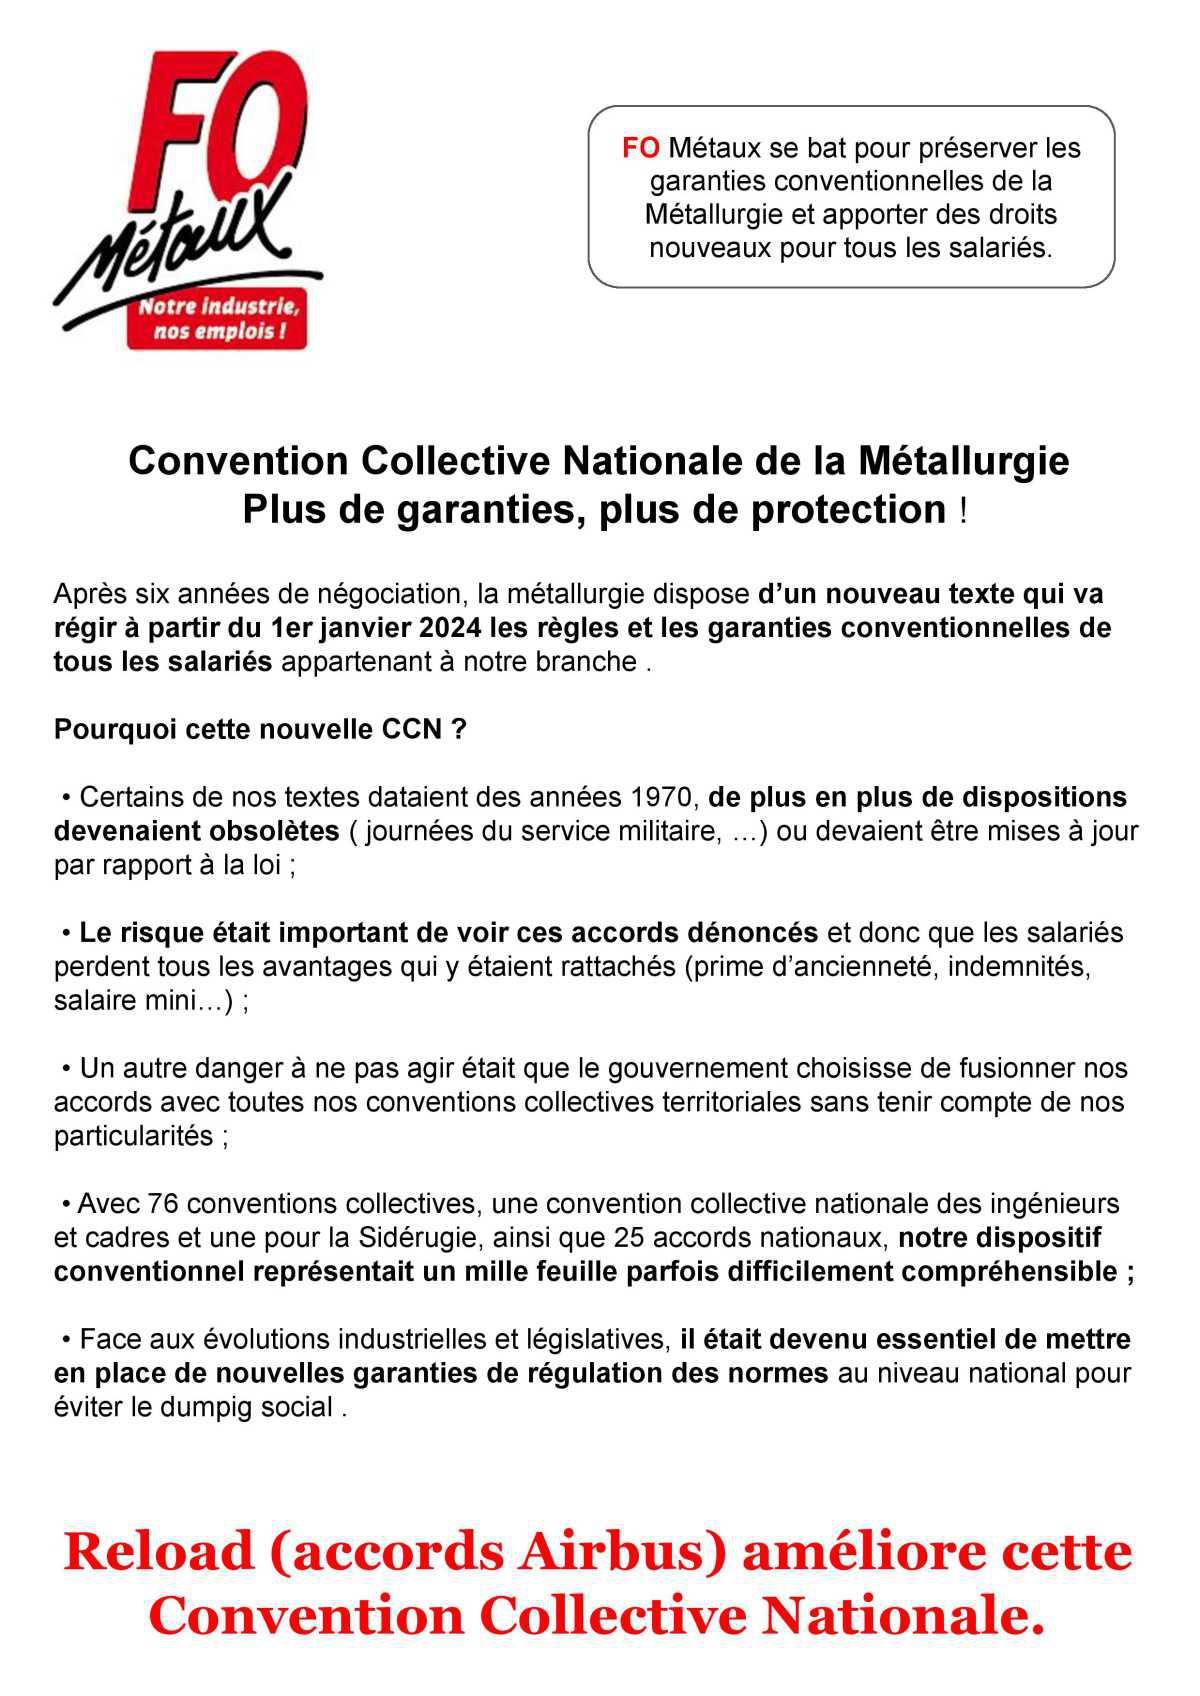 Convention Collective de la métallurgie : Plus de garanties, plus de protection!